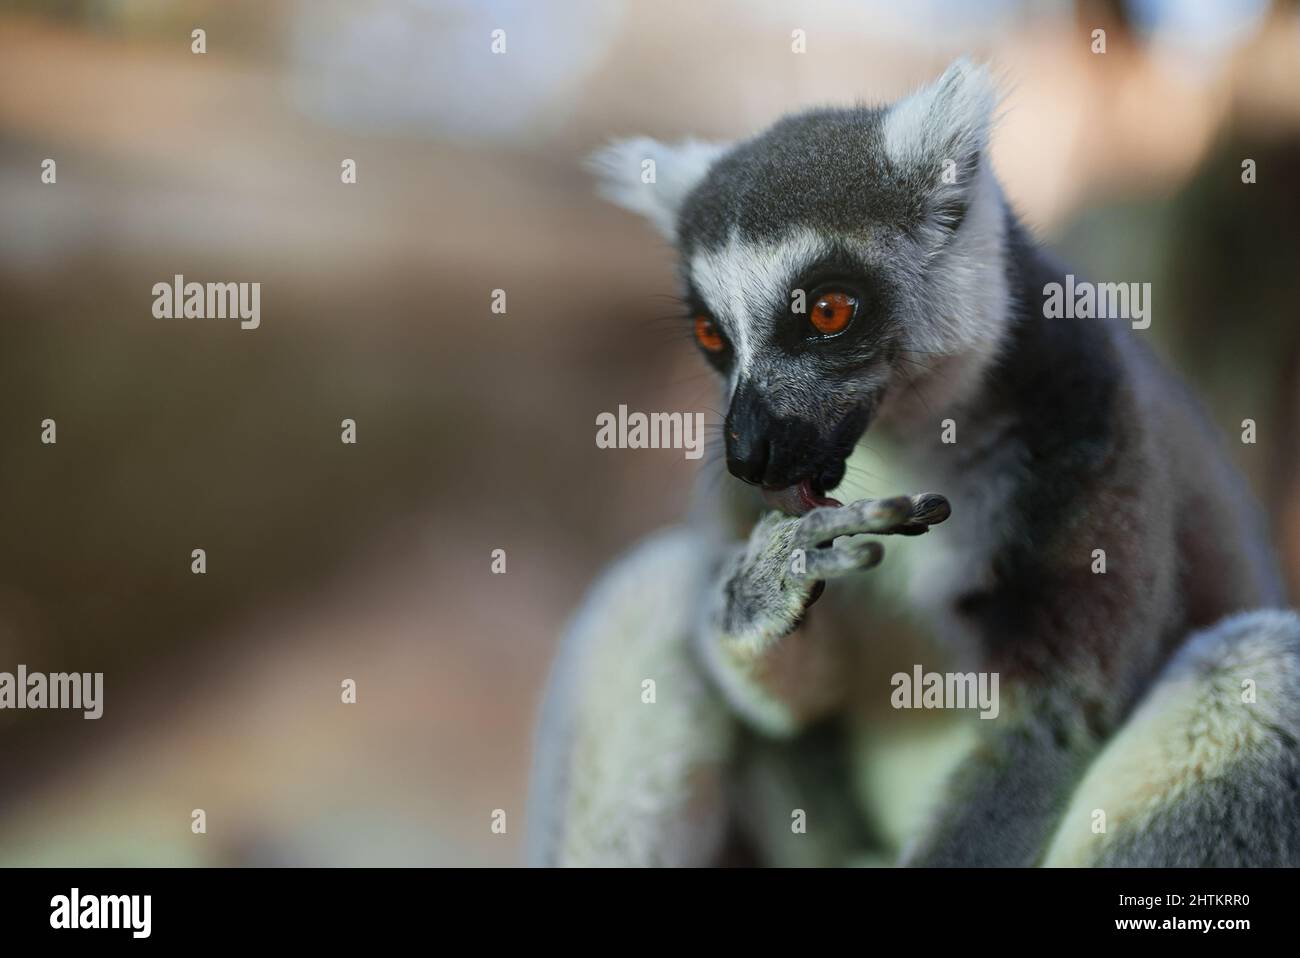 Portrait of lemur in national park. Lemuroidea. Stock Photo